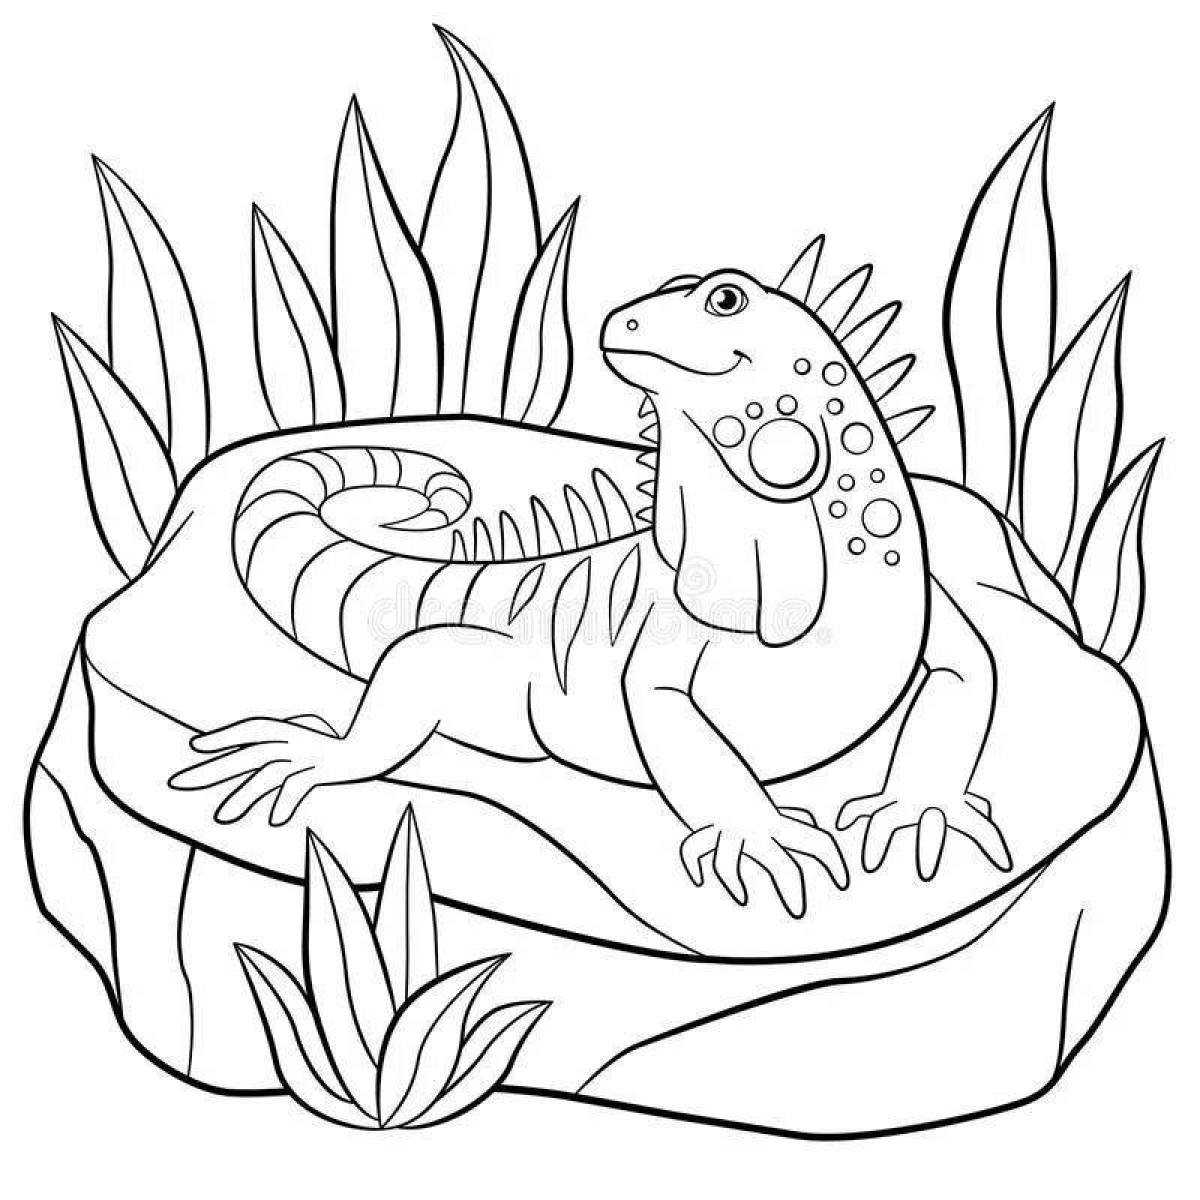 Zani iguana coloring page